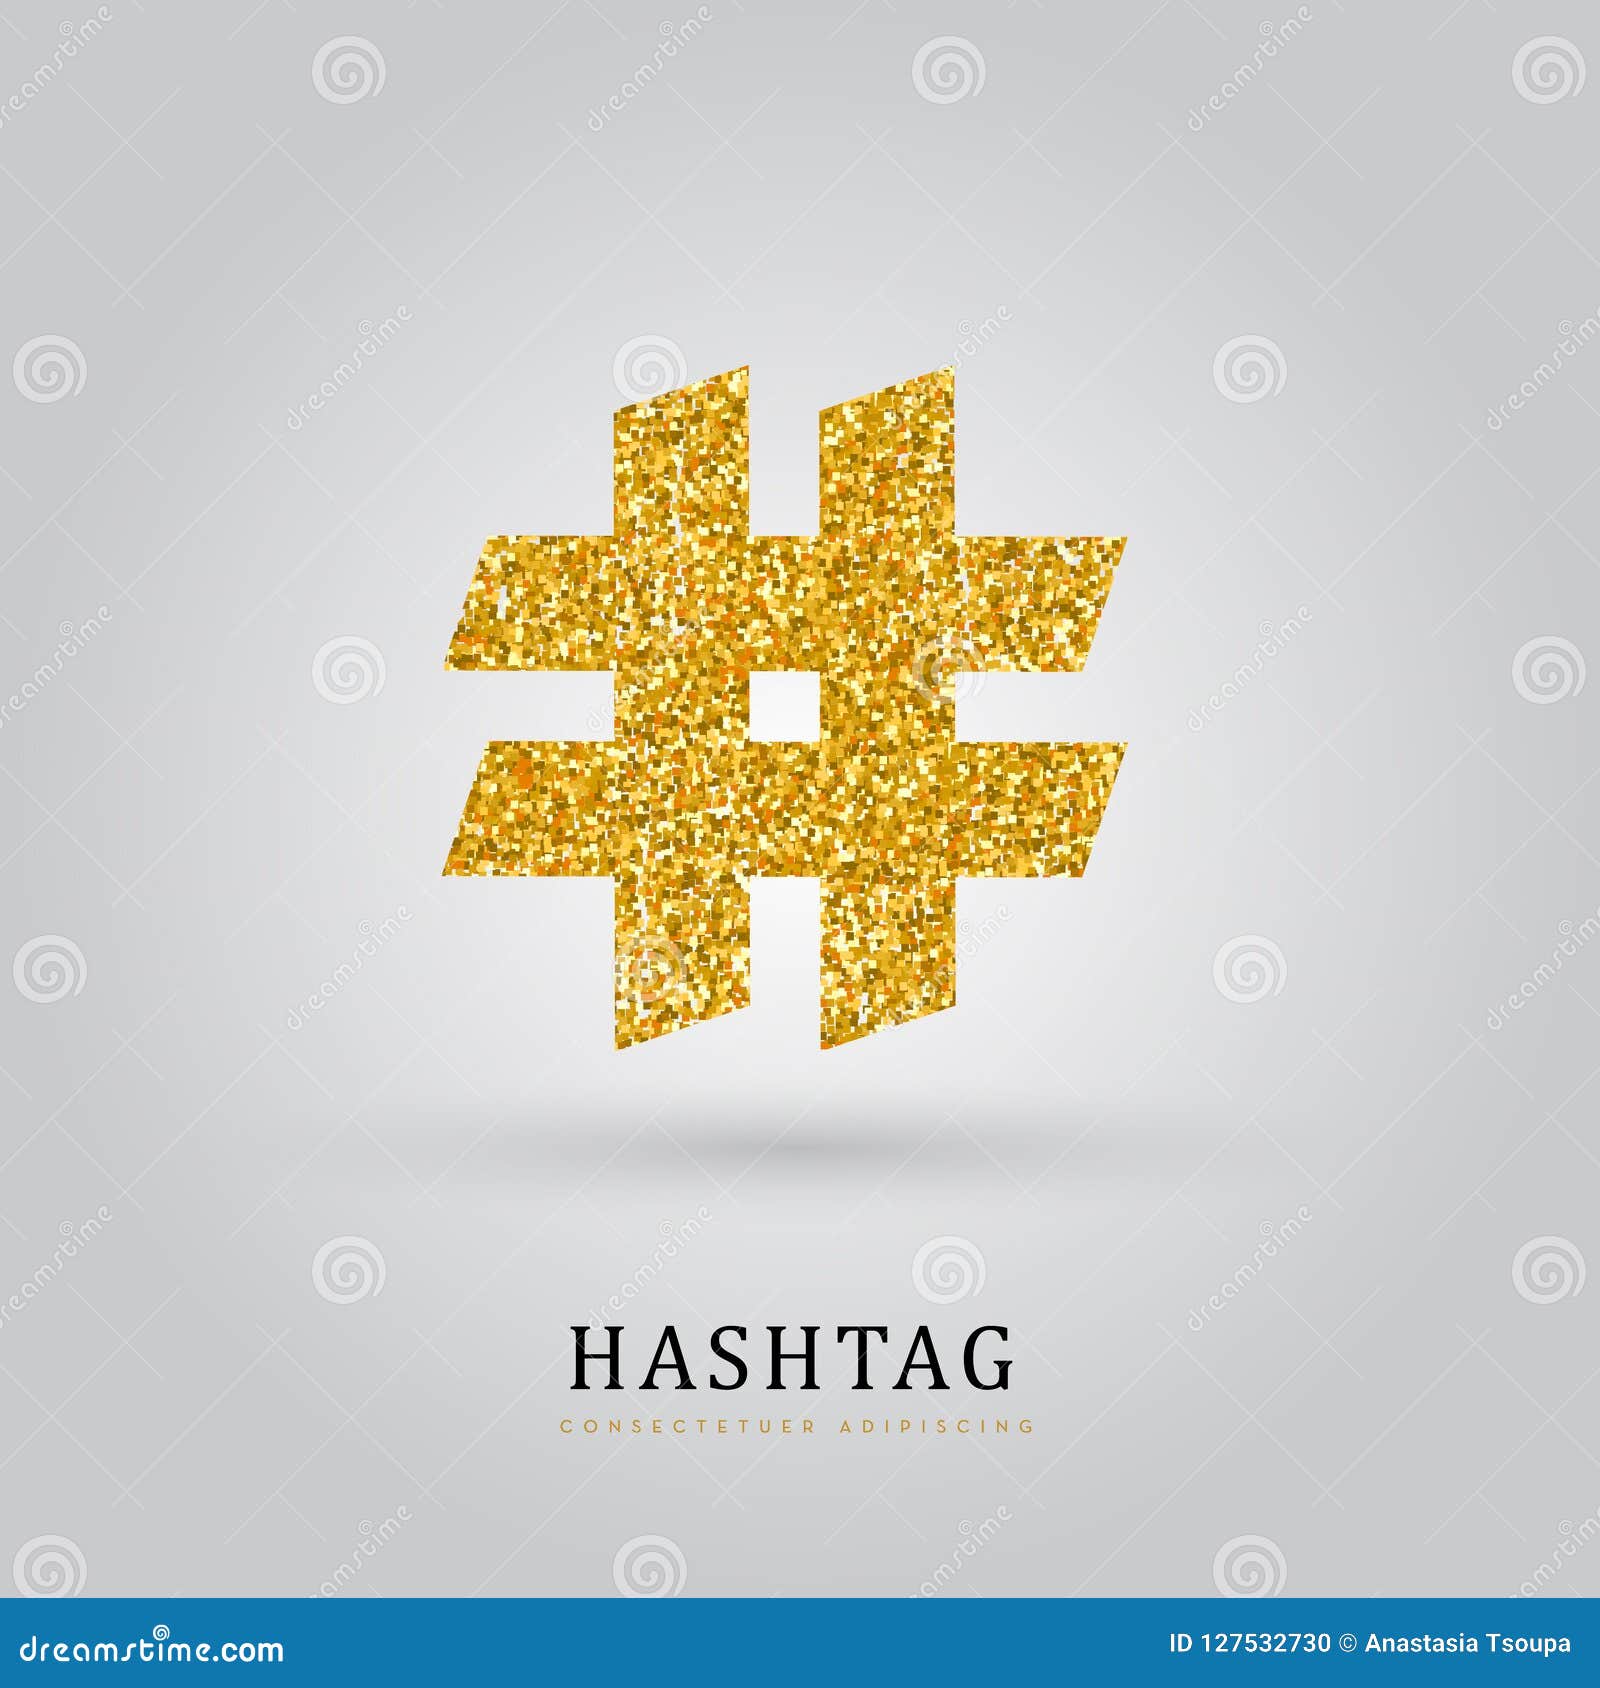 Illustration av det texturerade guld- hashtagsymbolet